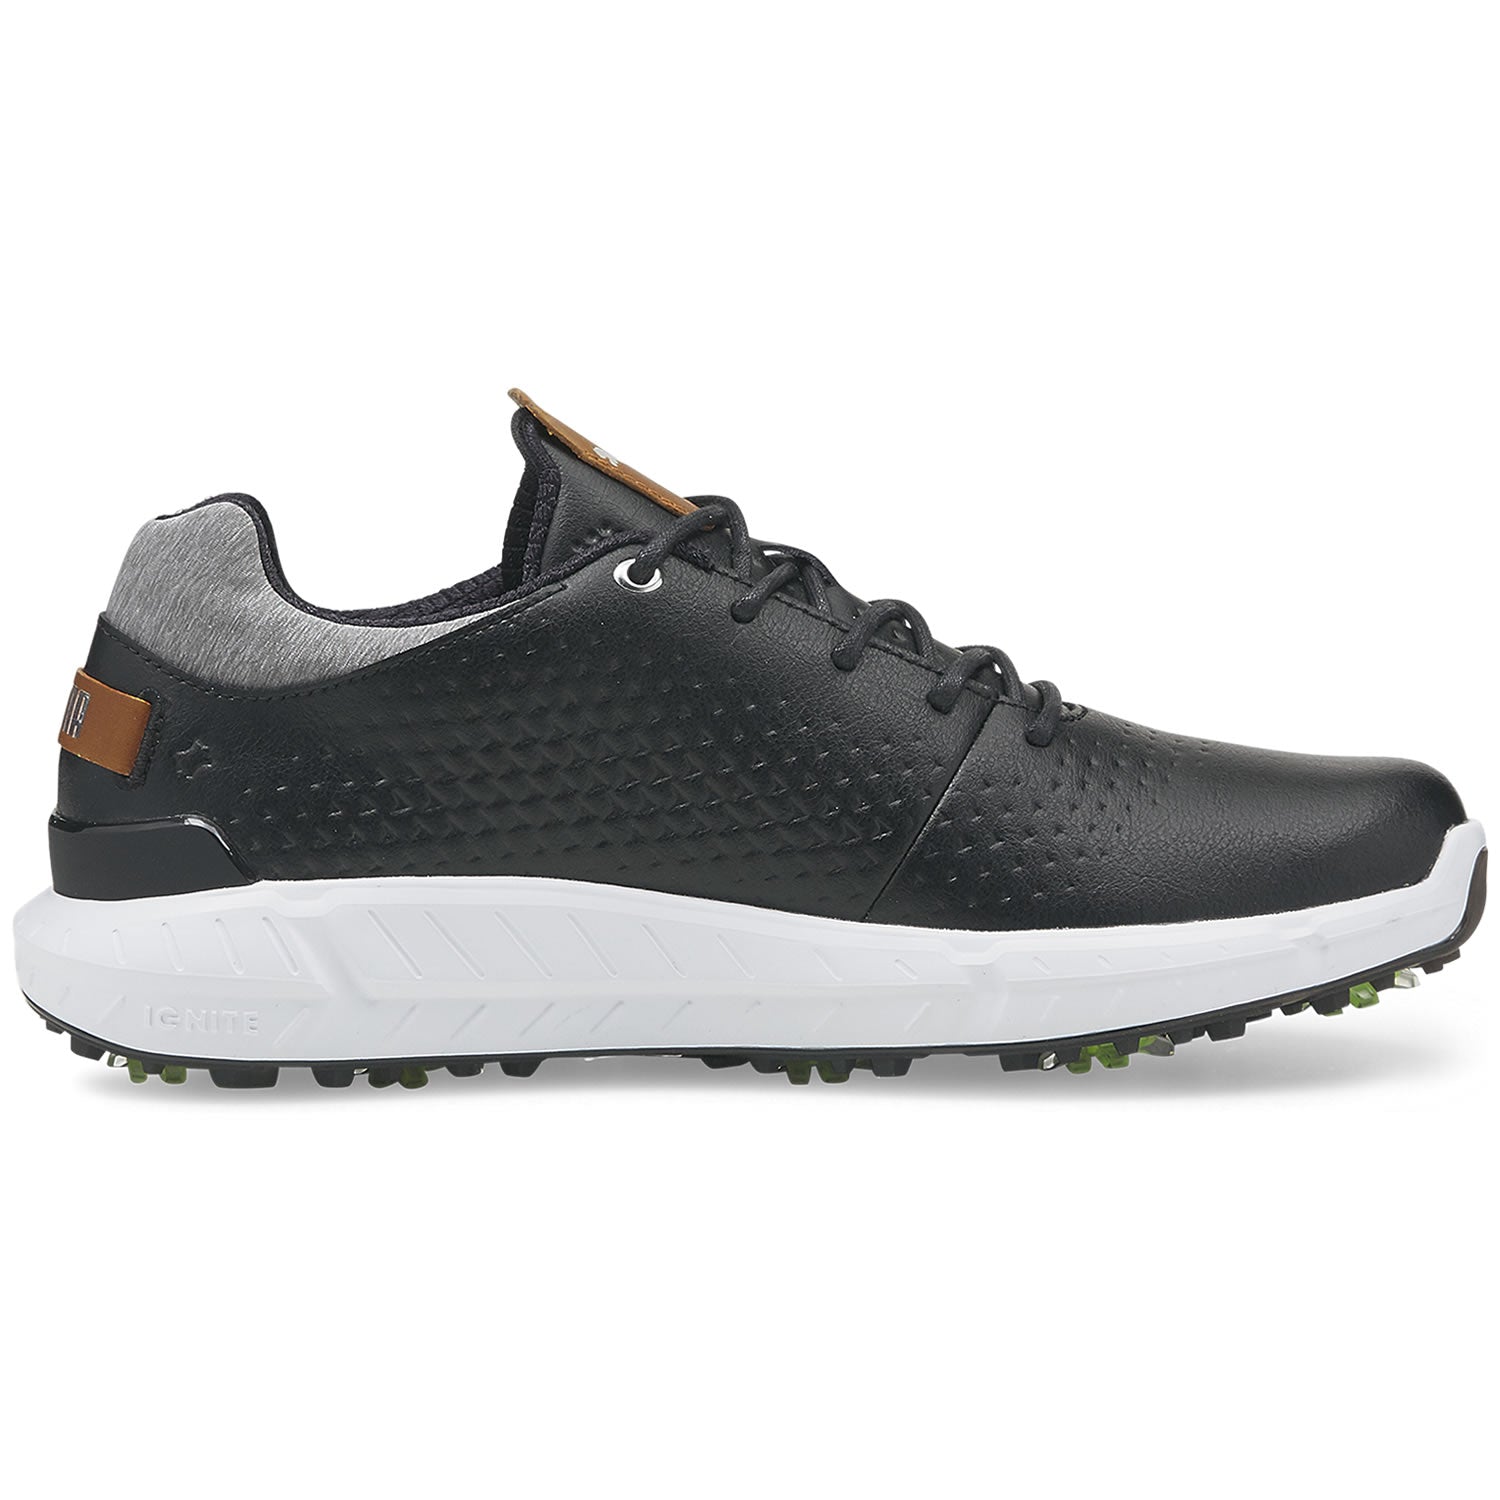 Puma Ignite Articulate Leather Golf Shoes 376155 – Clarkes Golf